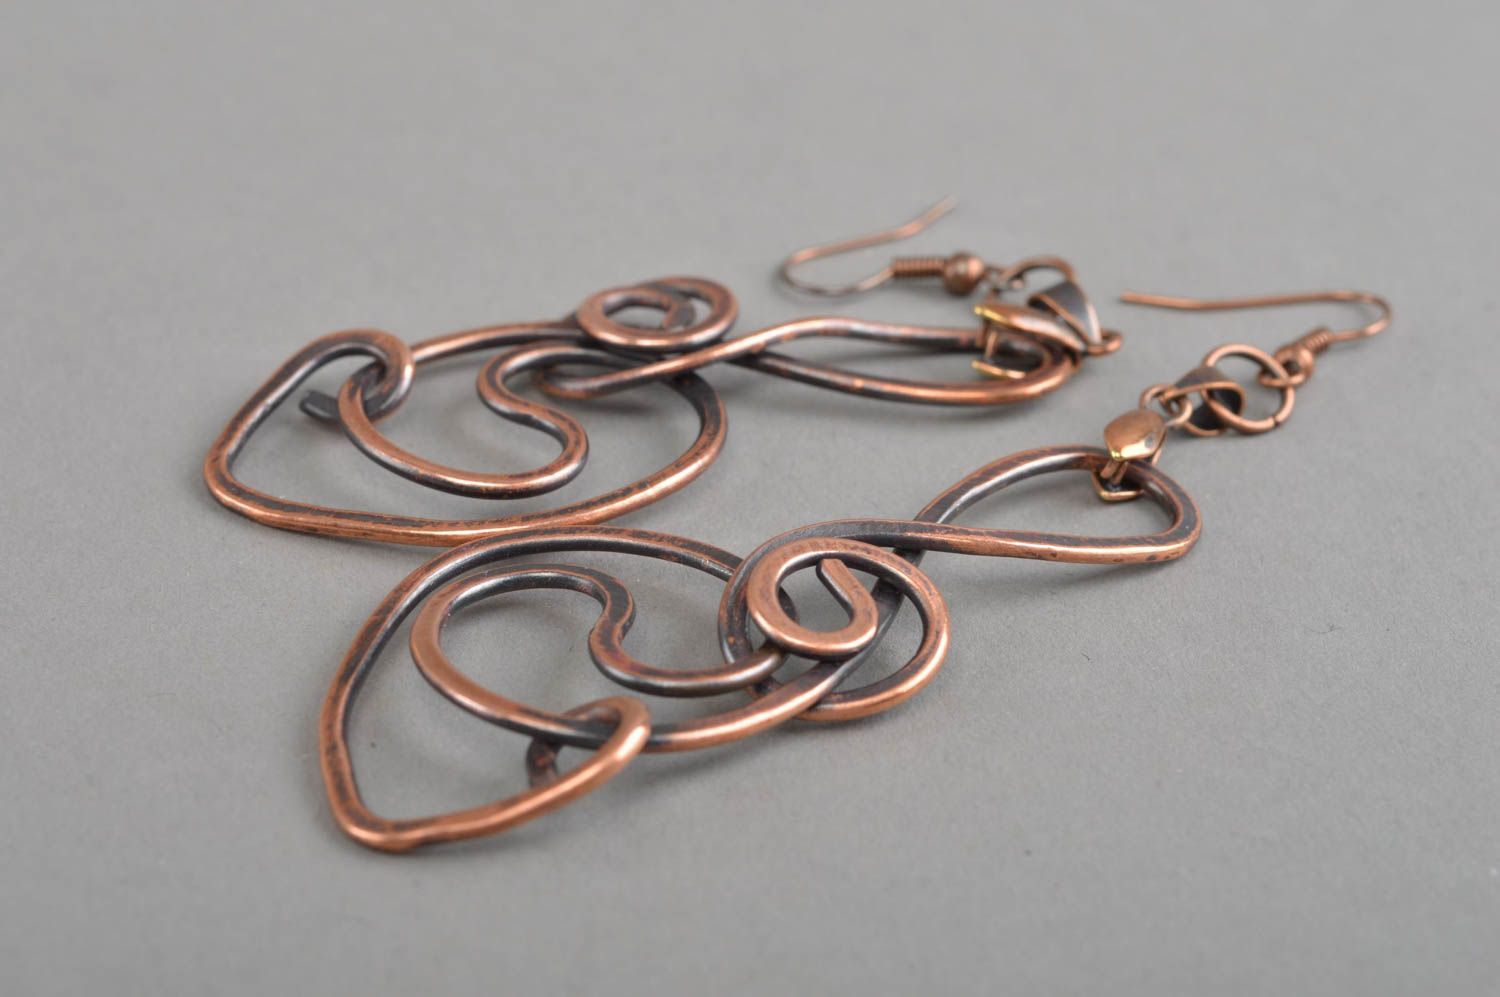 Unusual handmade metal earrings stylish copper earrings designer jewelry ideas photo 3